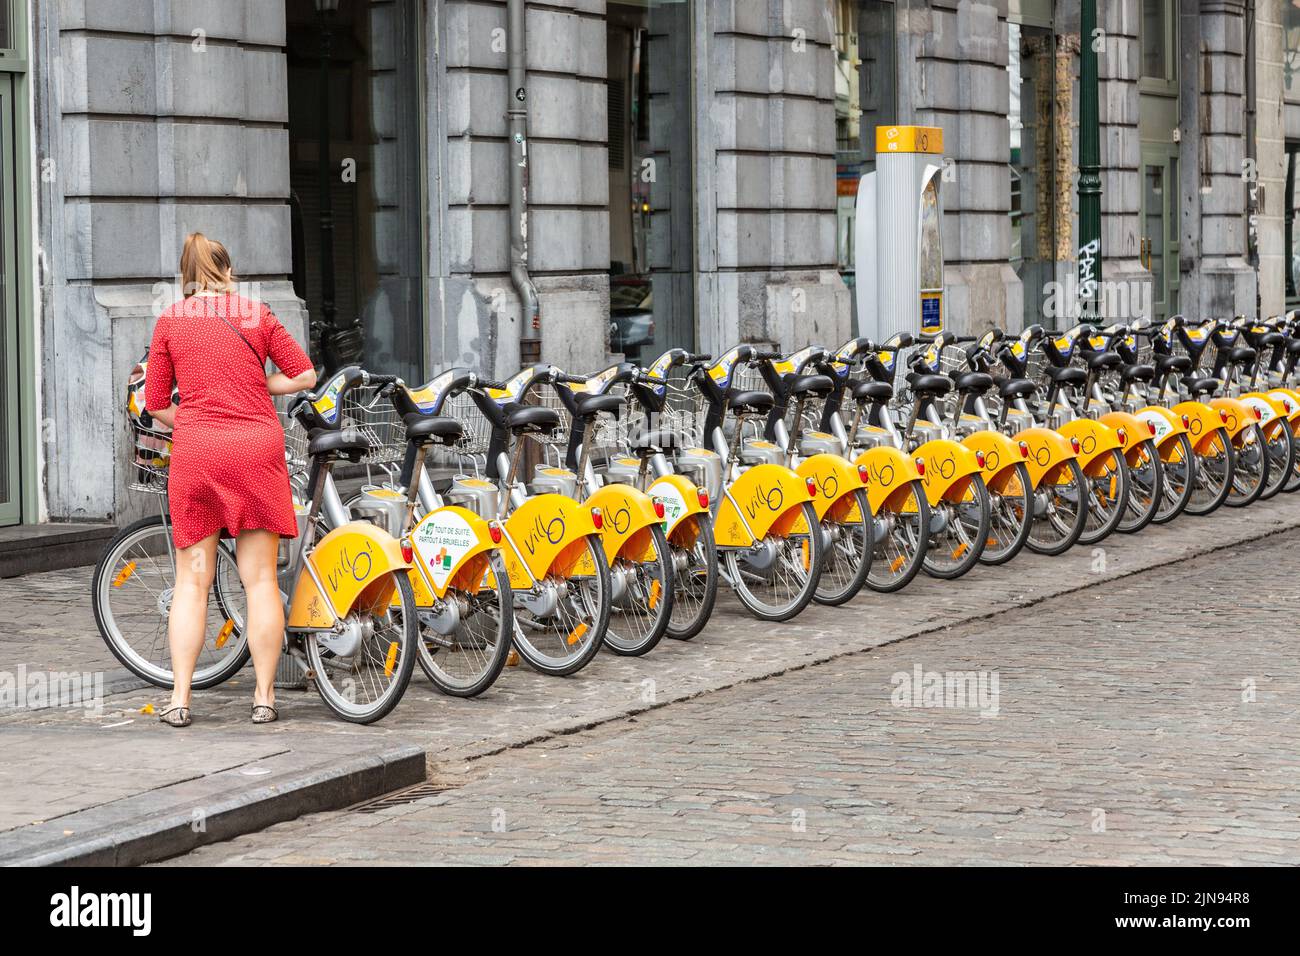 Señora vestida de rojo tomando posesión de una bicicleta compartida en una calle de Bruselas Foto de stock